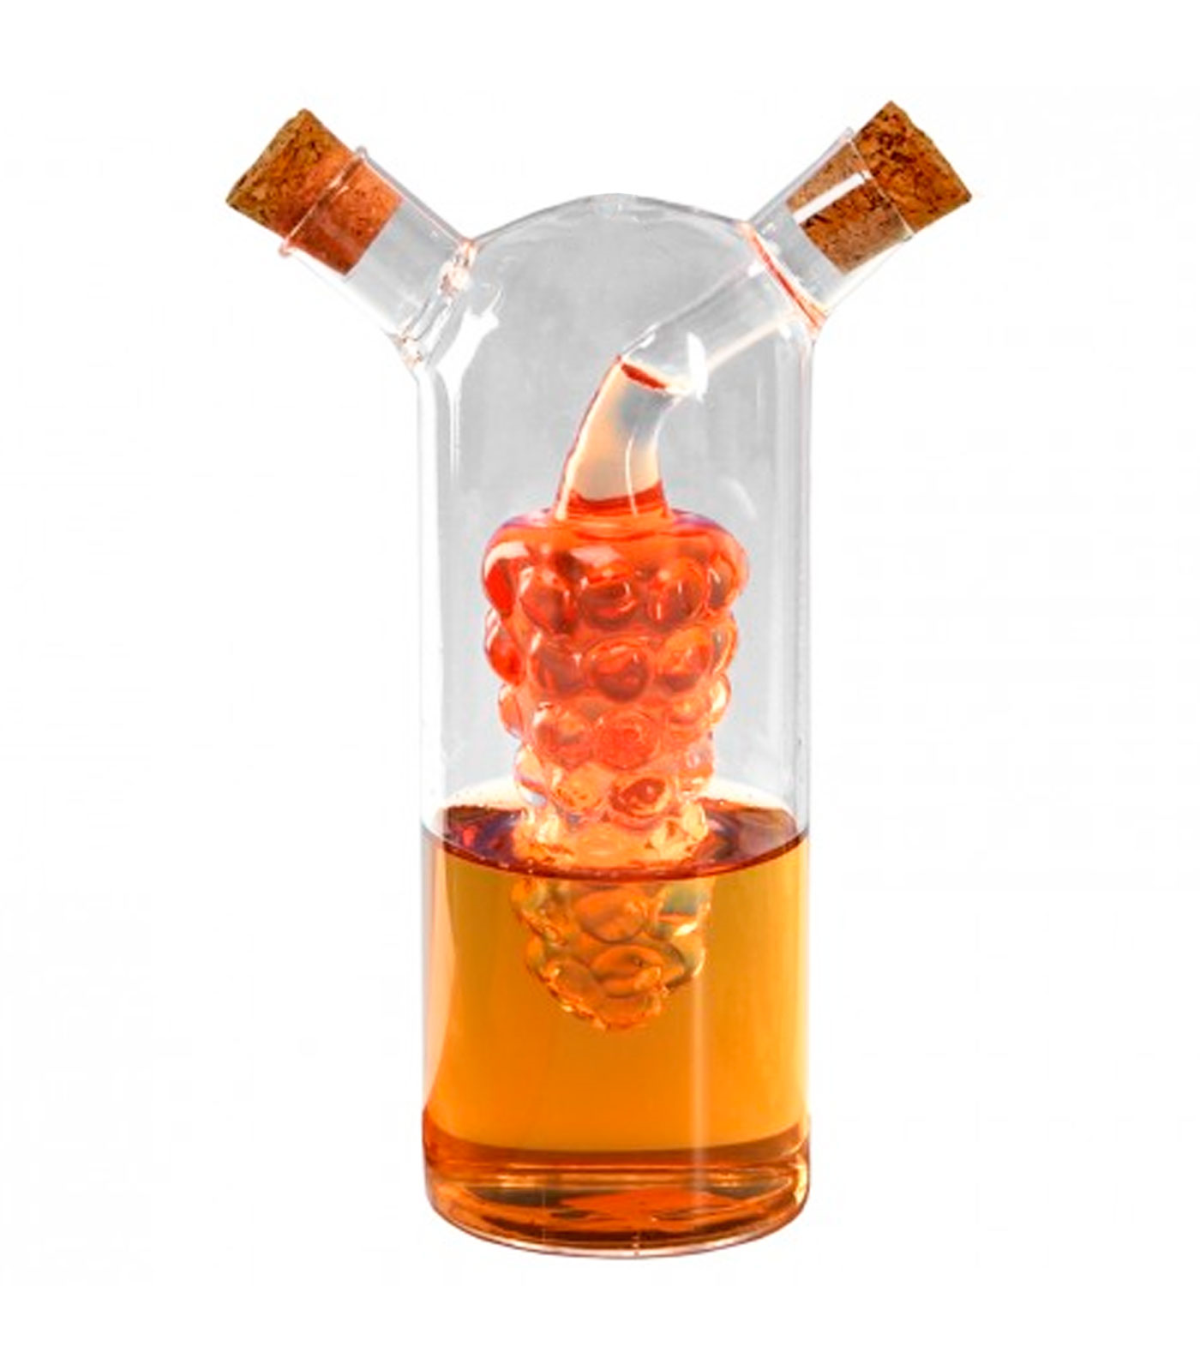 Tradineur - Aceitera de cristal a rayas con pulverizador de spray,  dispensador rellenable para aceite, vinagre, aliñar ensaladas